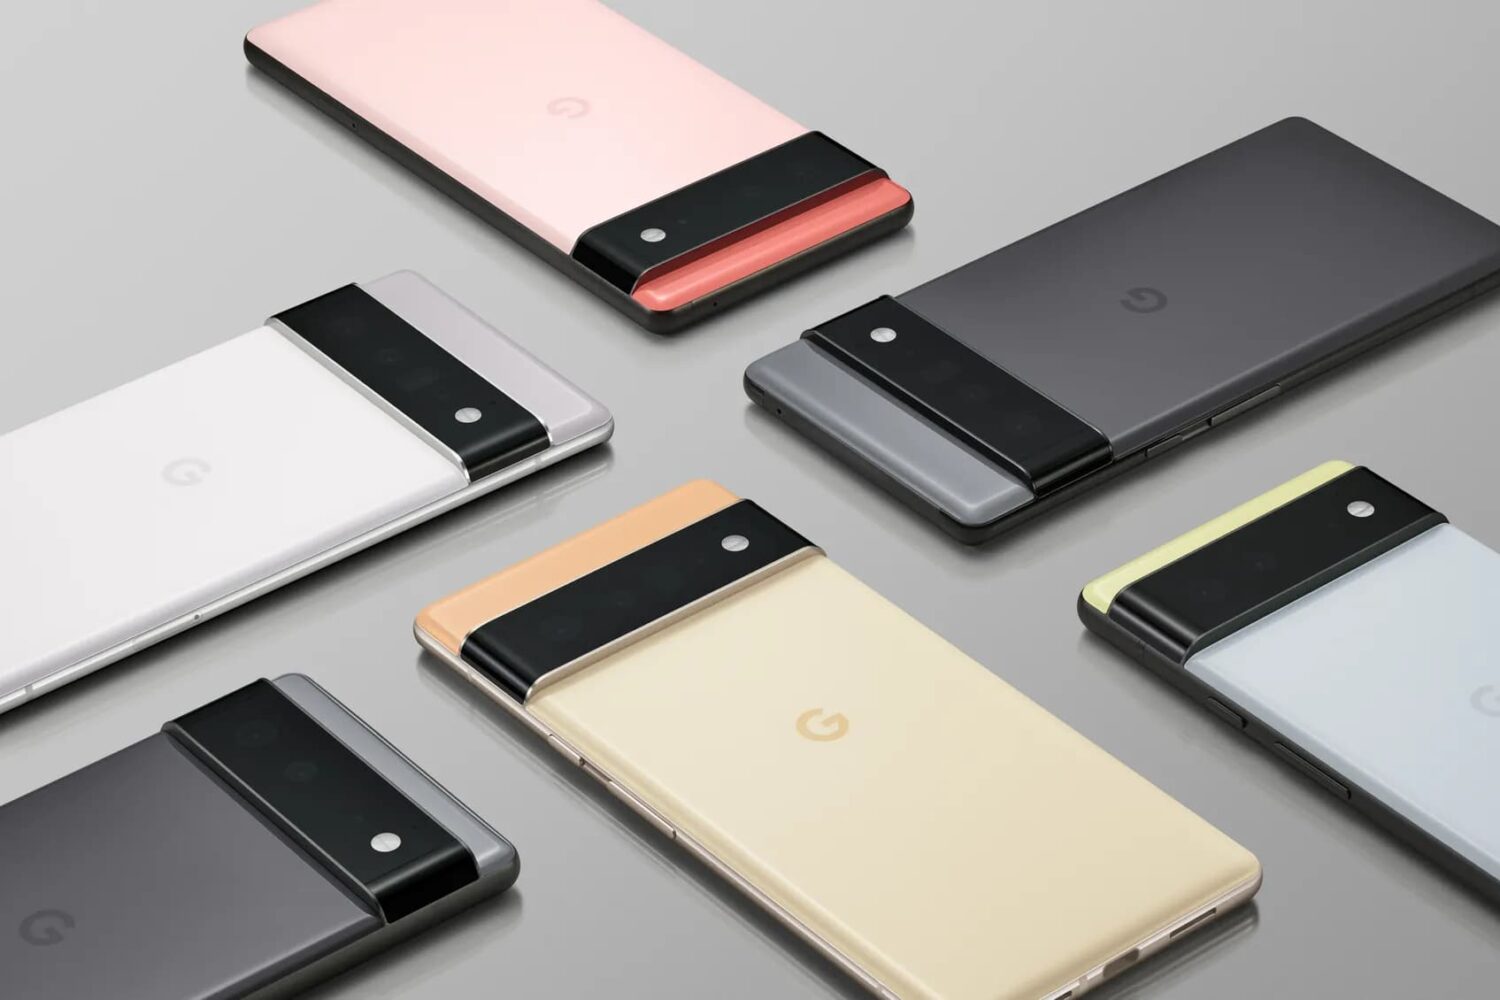 Promotionele graphics met de Google Pixel 6 en Pixel 6 Pro smartphone line-up